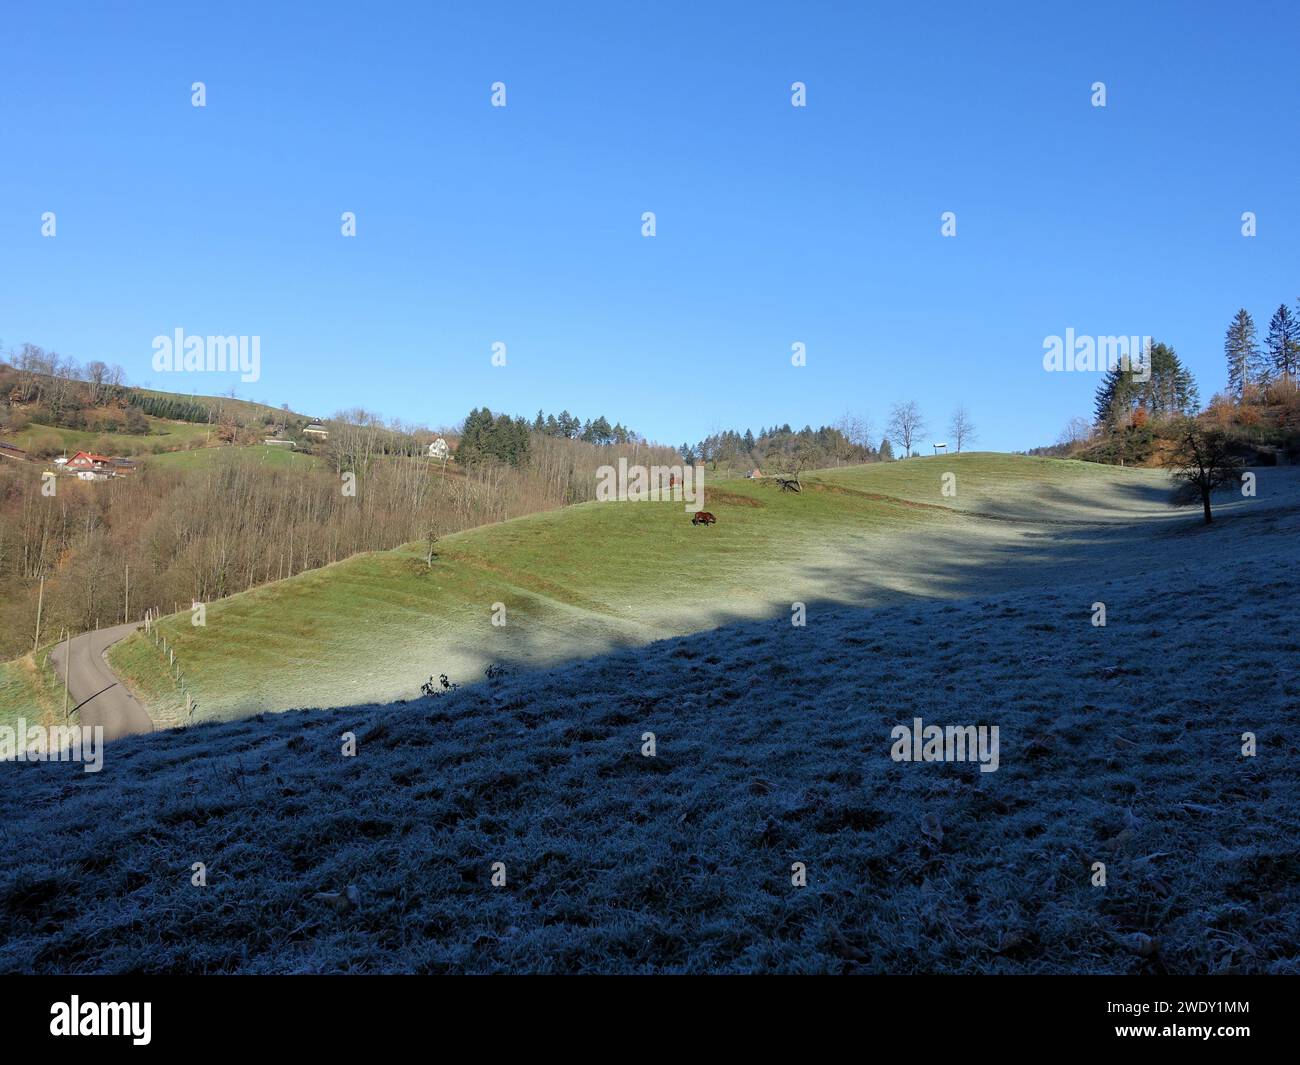 Schafe, die auf einer frostigen grünen Landschaft unter einem klaren blauen Himmel weiden Stockfoto